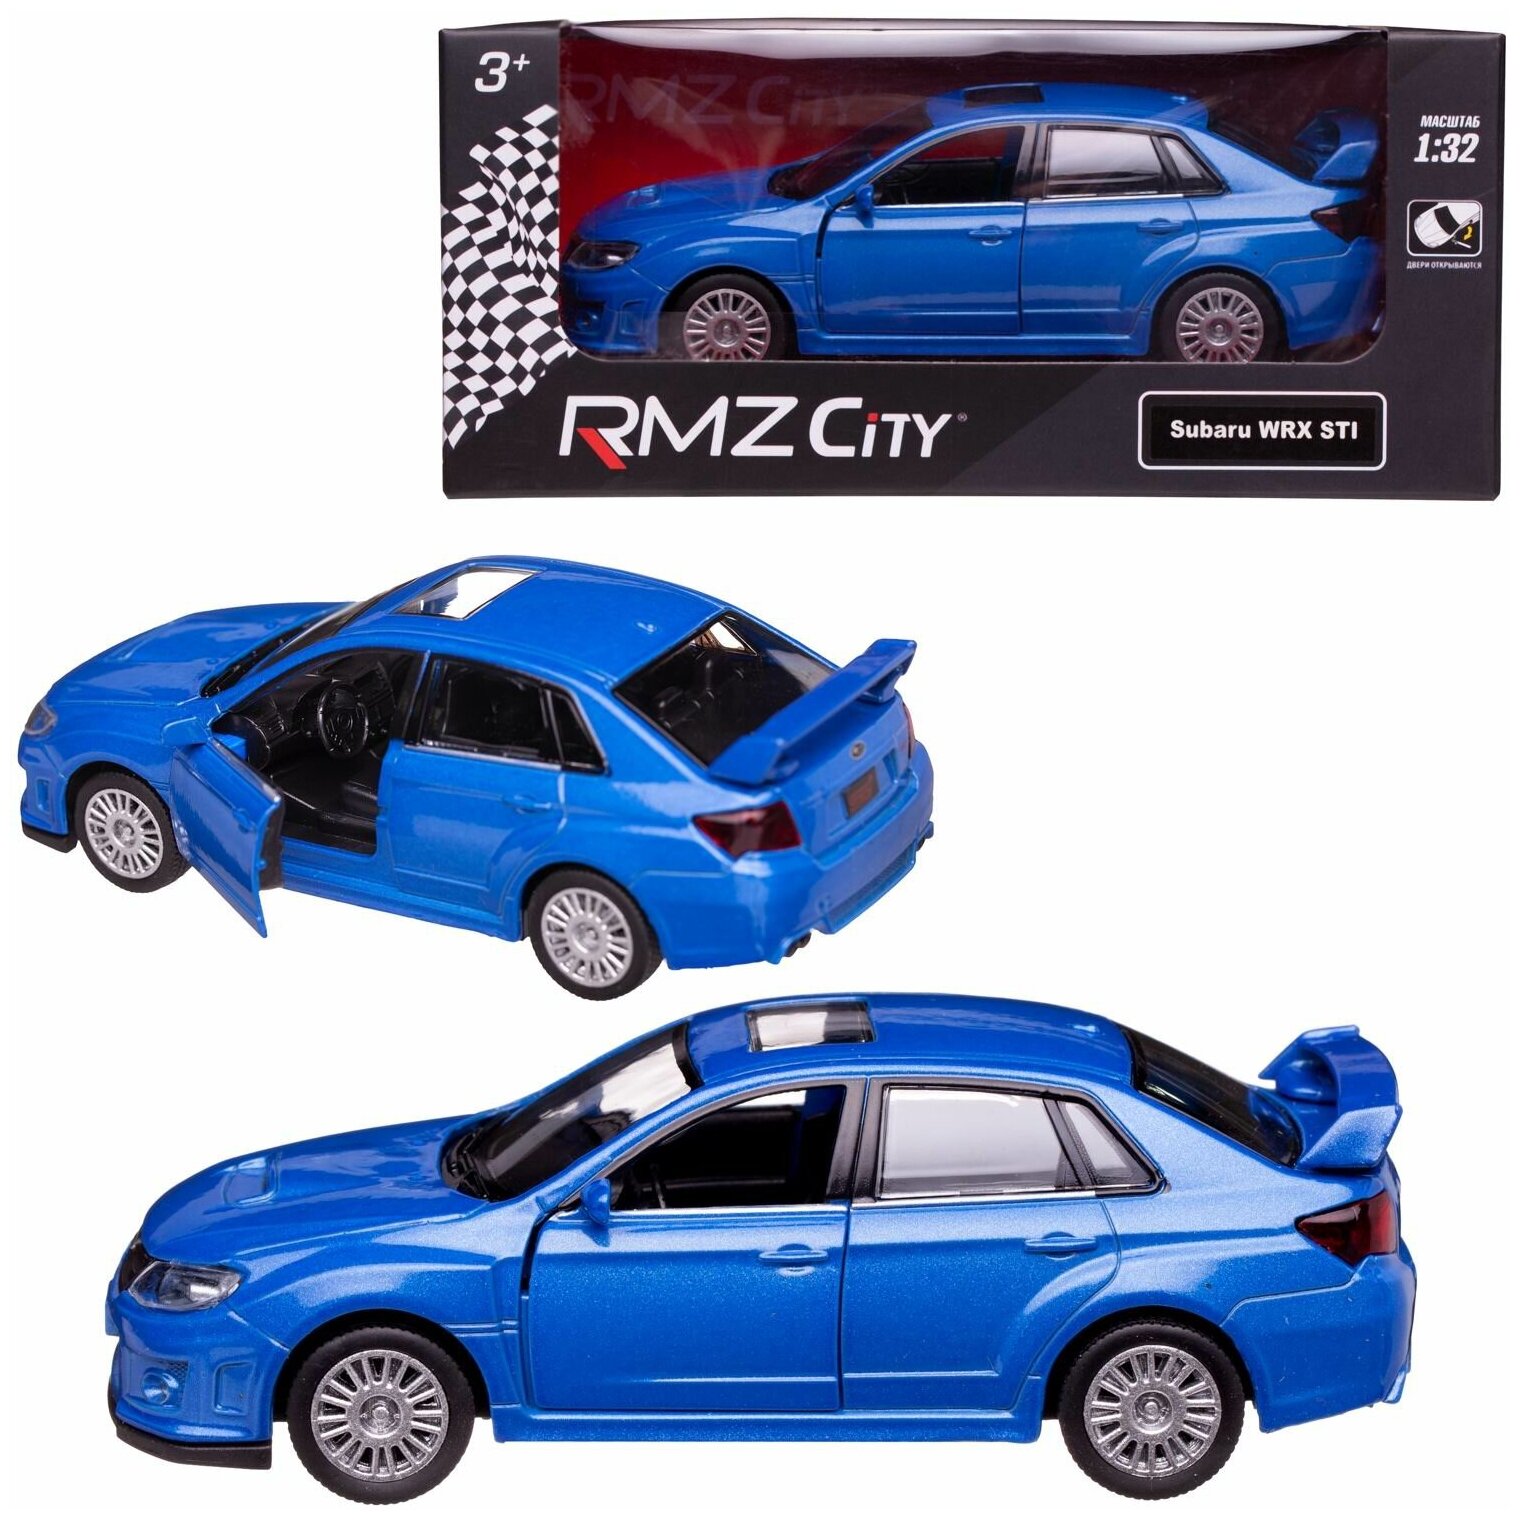 Машинка металлическая Uni-Fortune RMZ City серия 1:32 SUBARU WRX STI инерционная, цвет синий, двери открываются